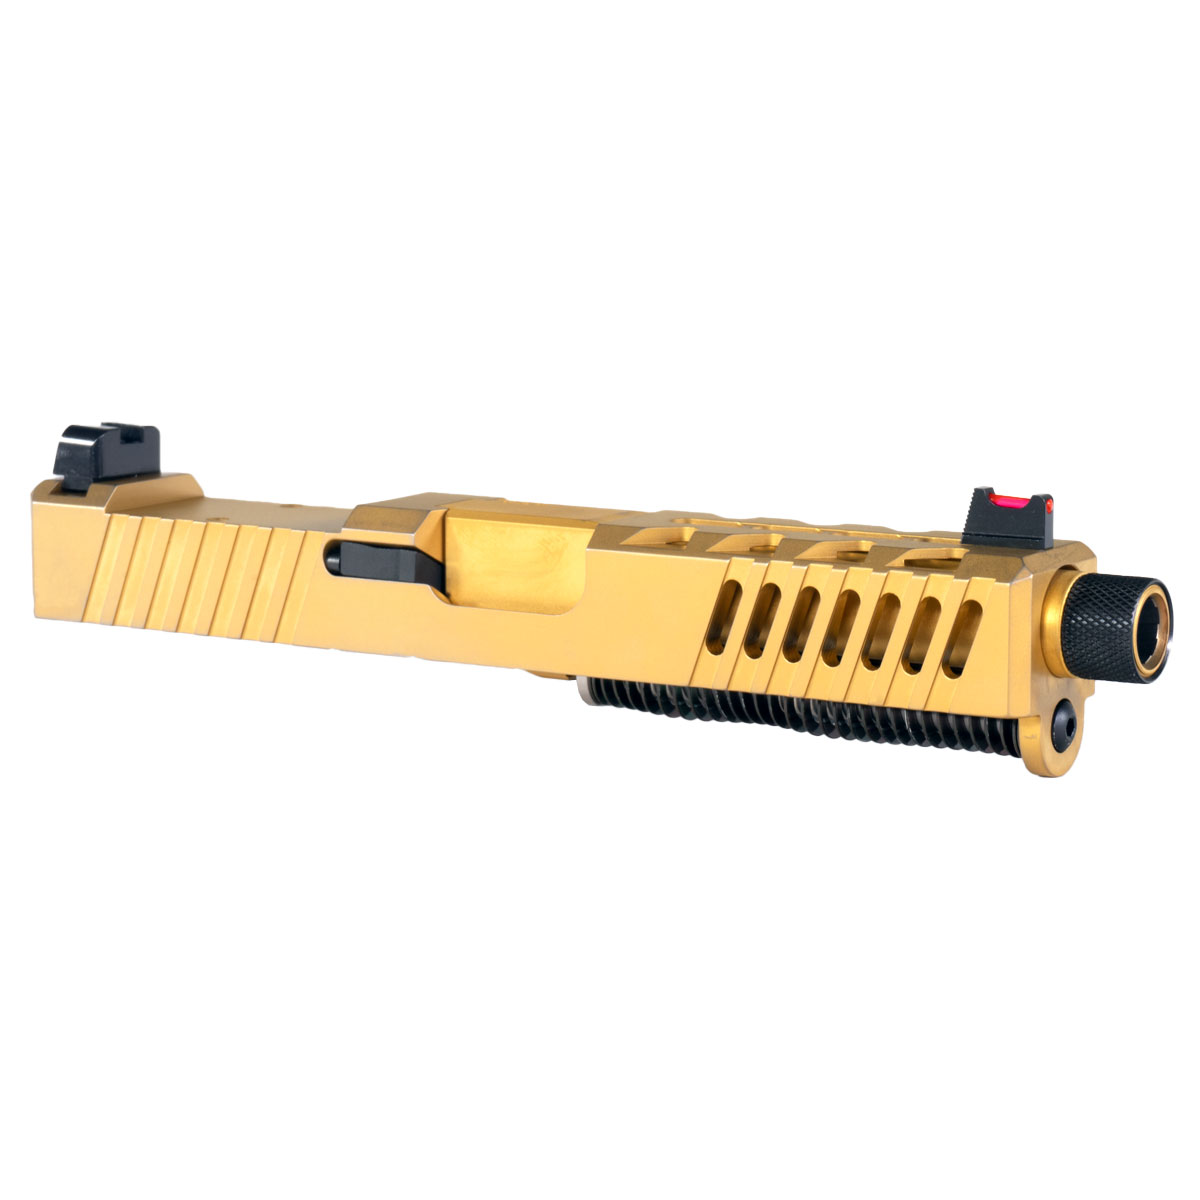 DTT 'AU-197' 9mm Complete Slide Kit - Glock 19 Compatible